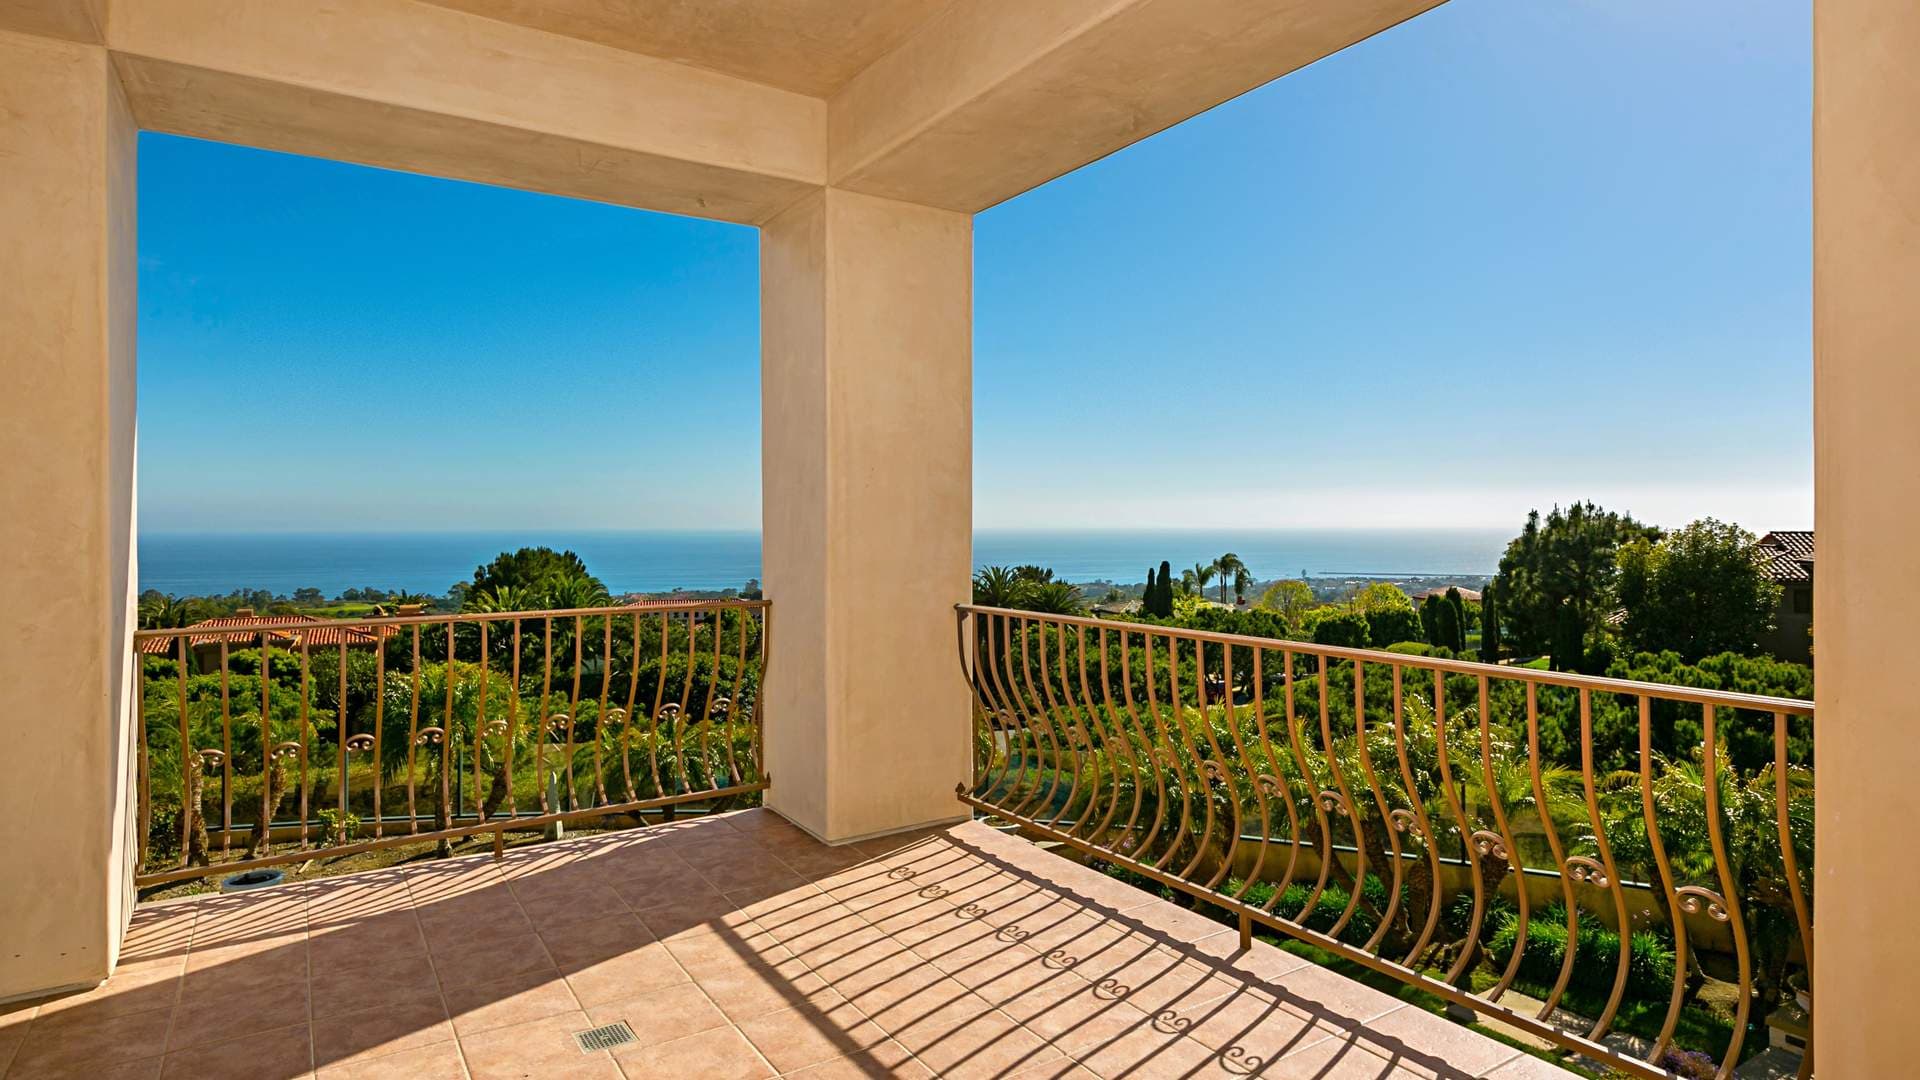 5 Bedroom Villa For Sale Newport Beach Lp01276 2a931c40a0485e00.jpg